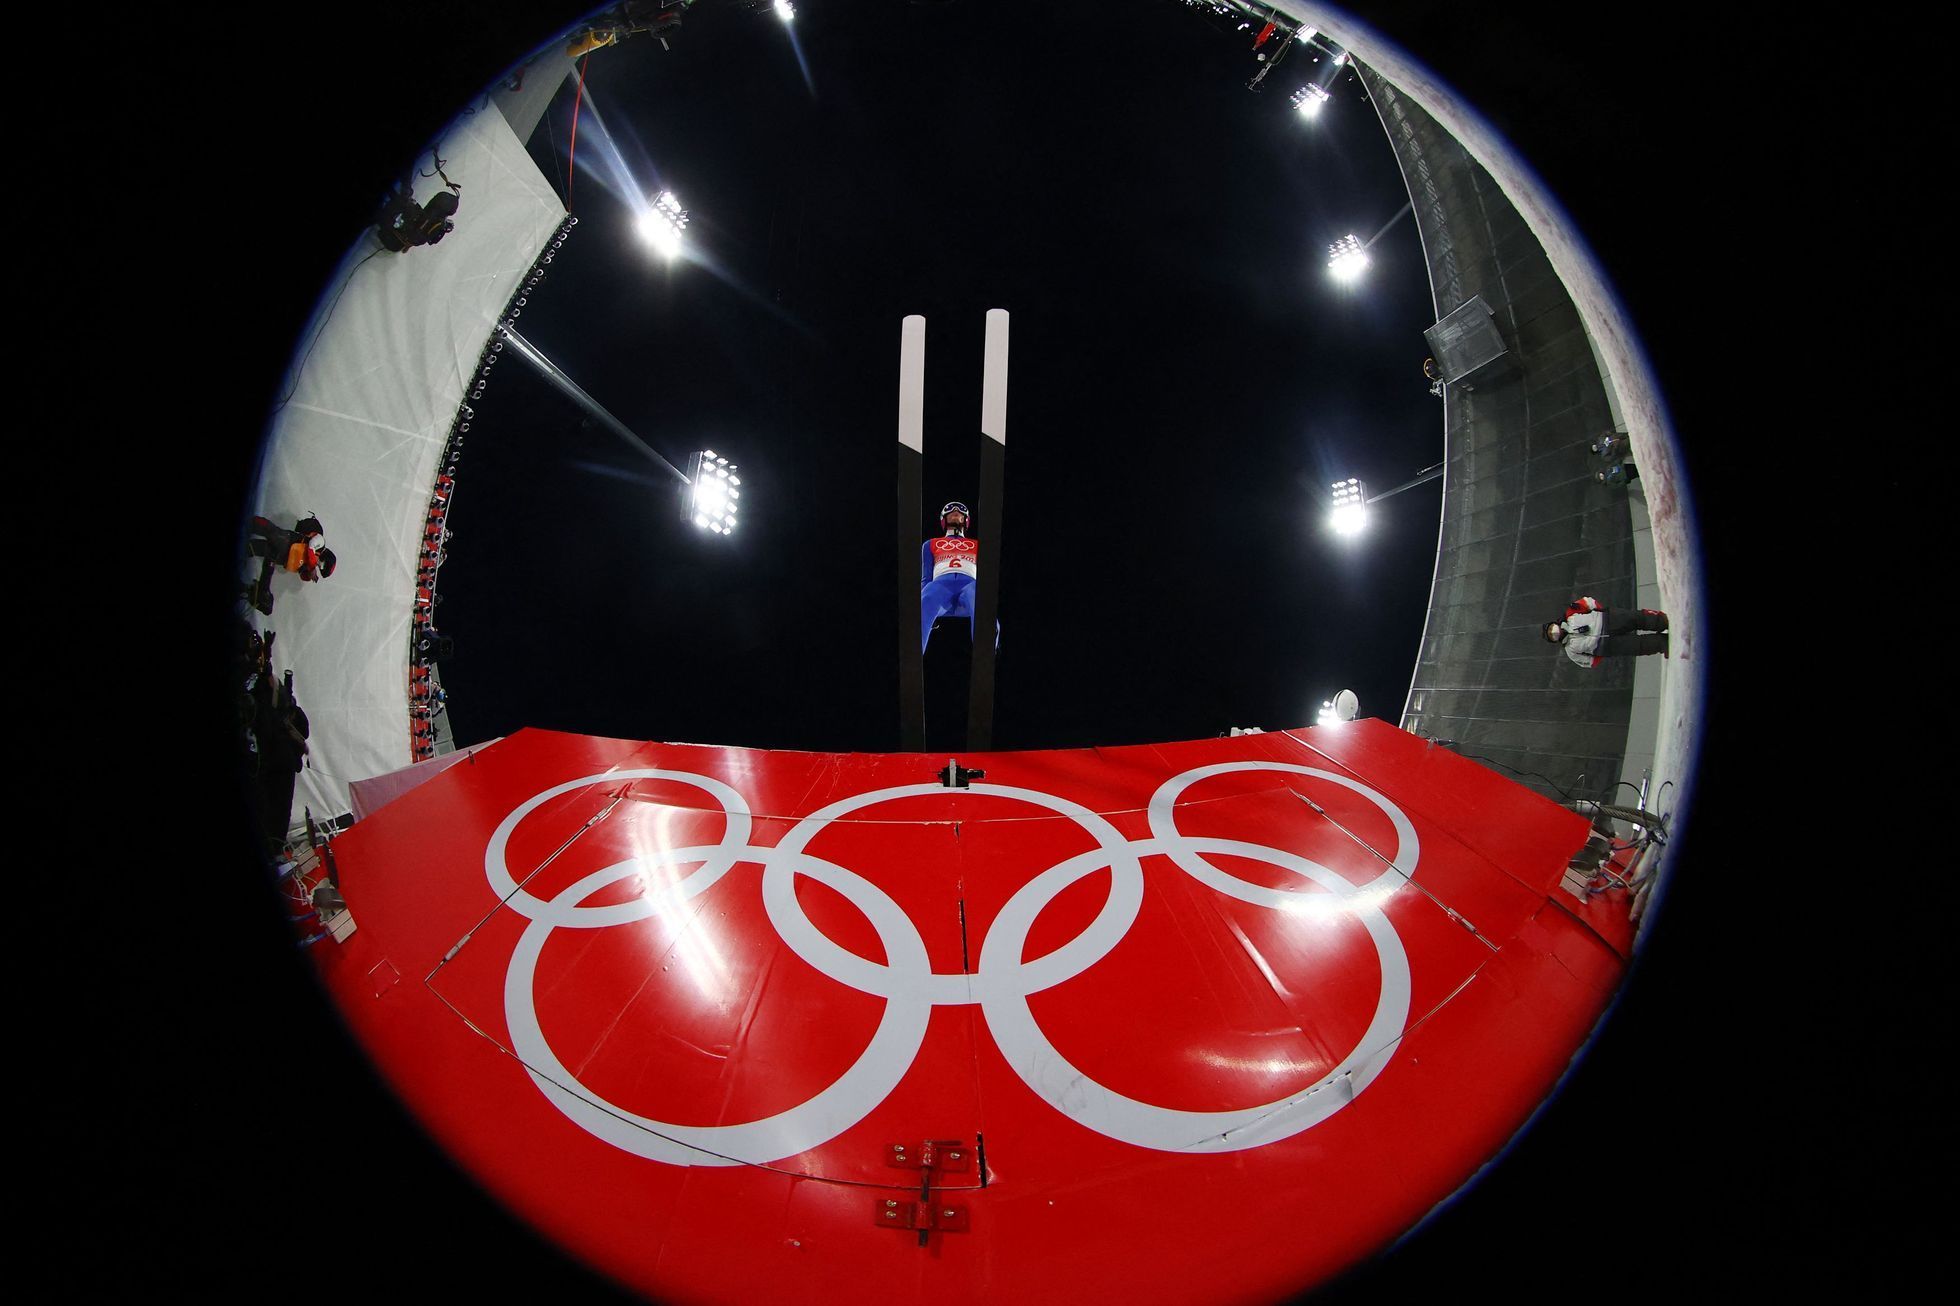 Čestmír Kožíšek při olympijském závodě na středním můstku v Pekingu 2022